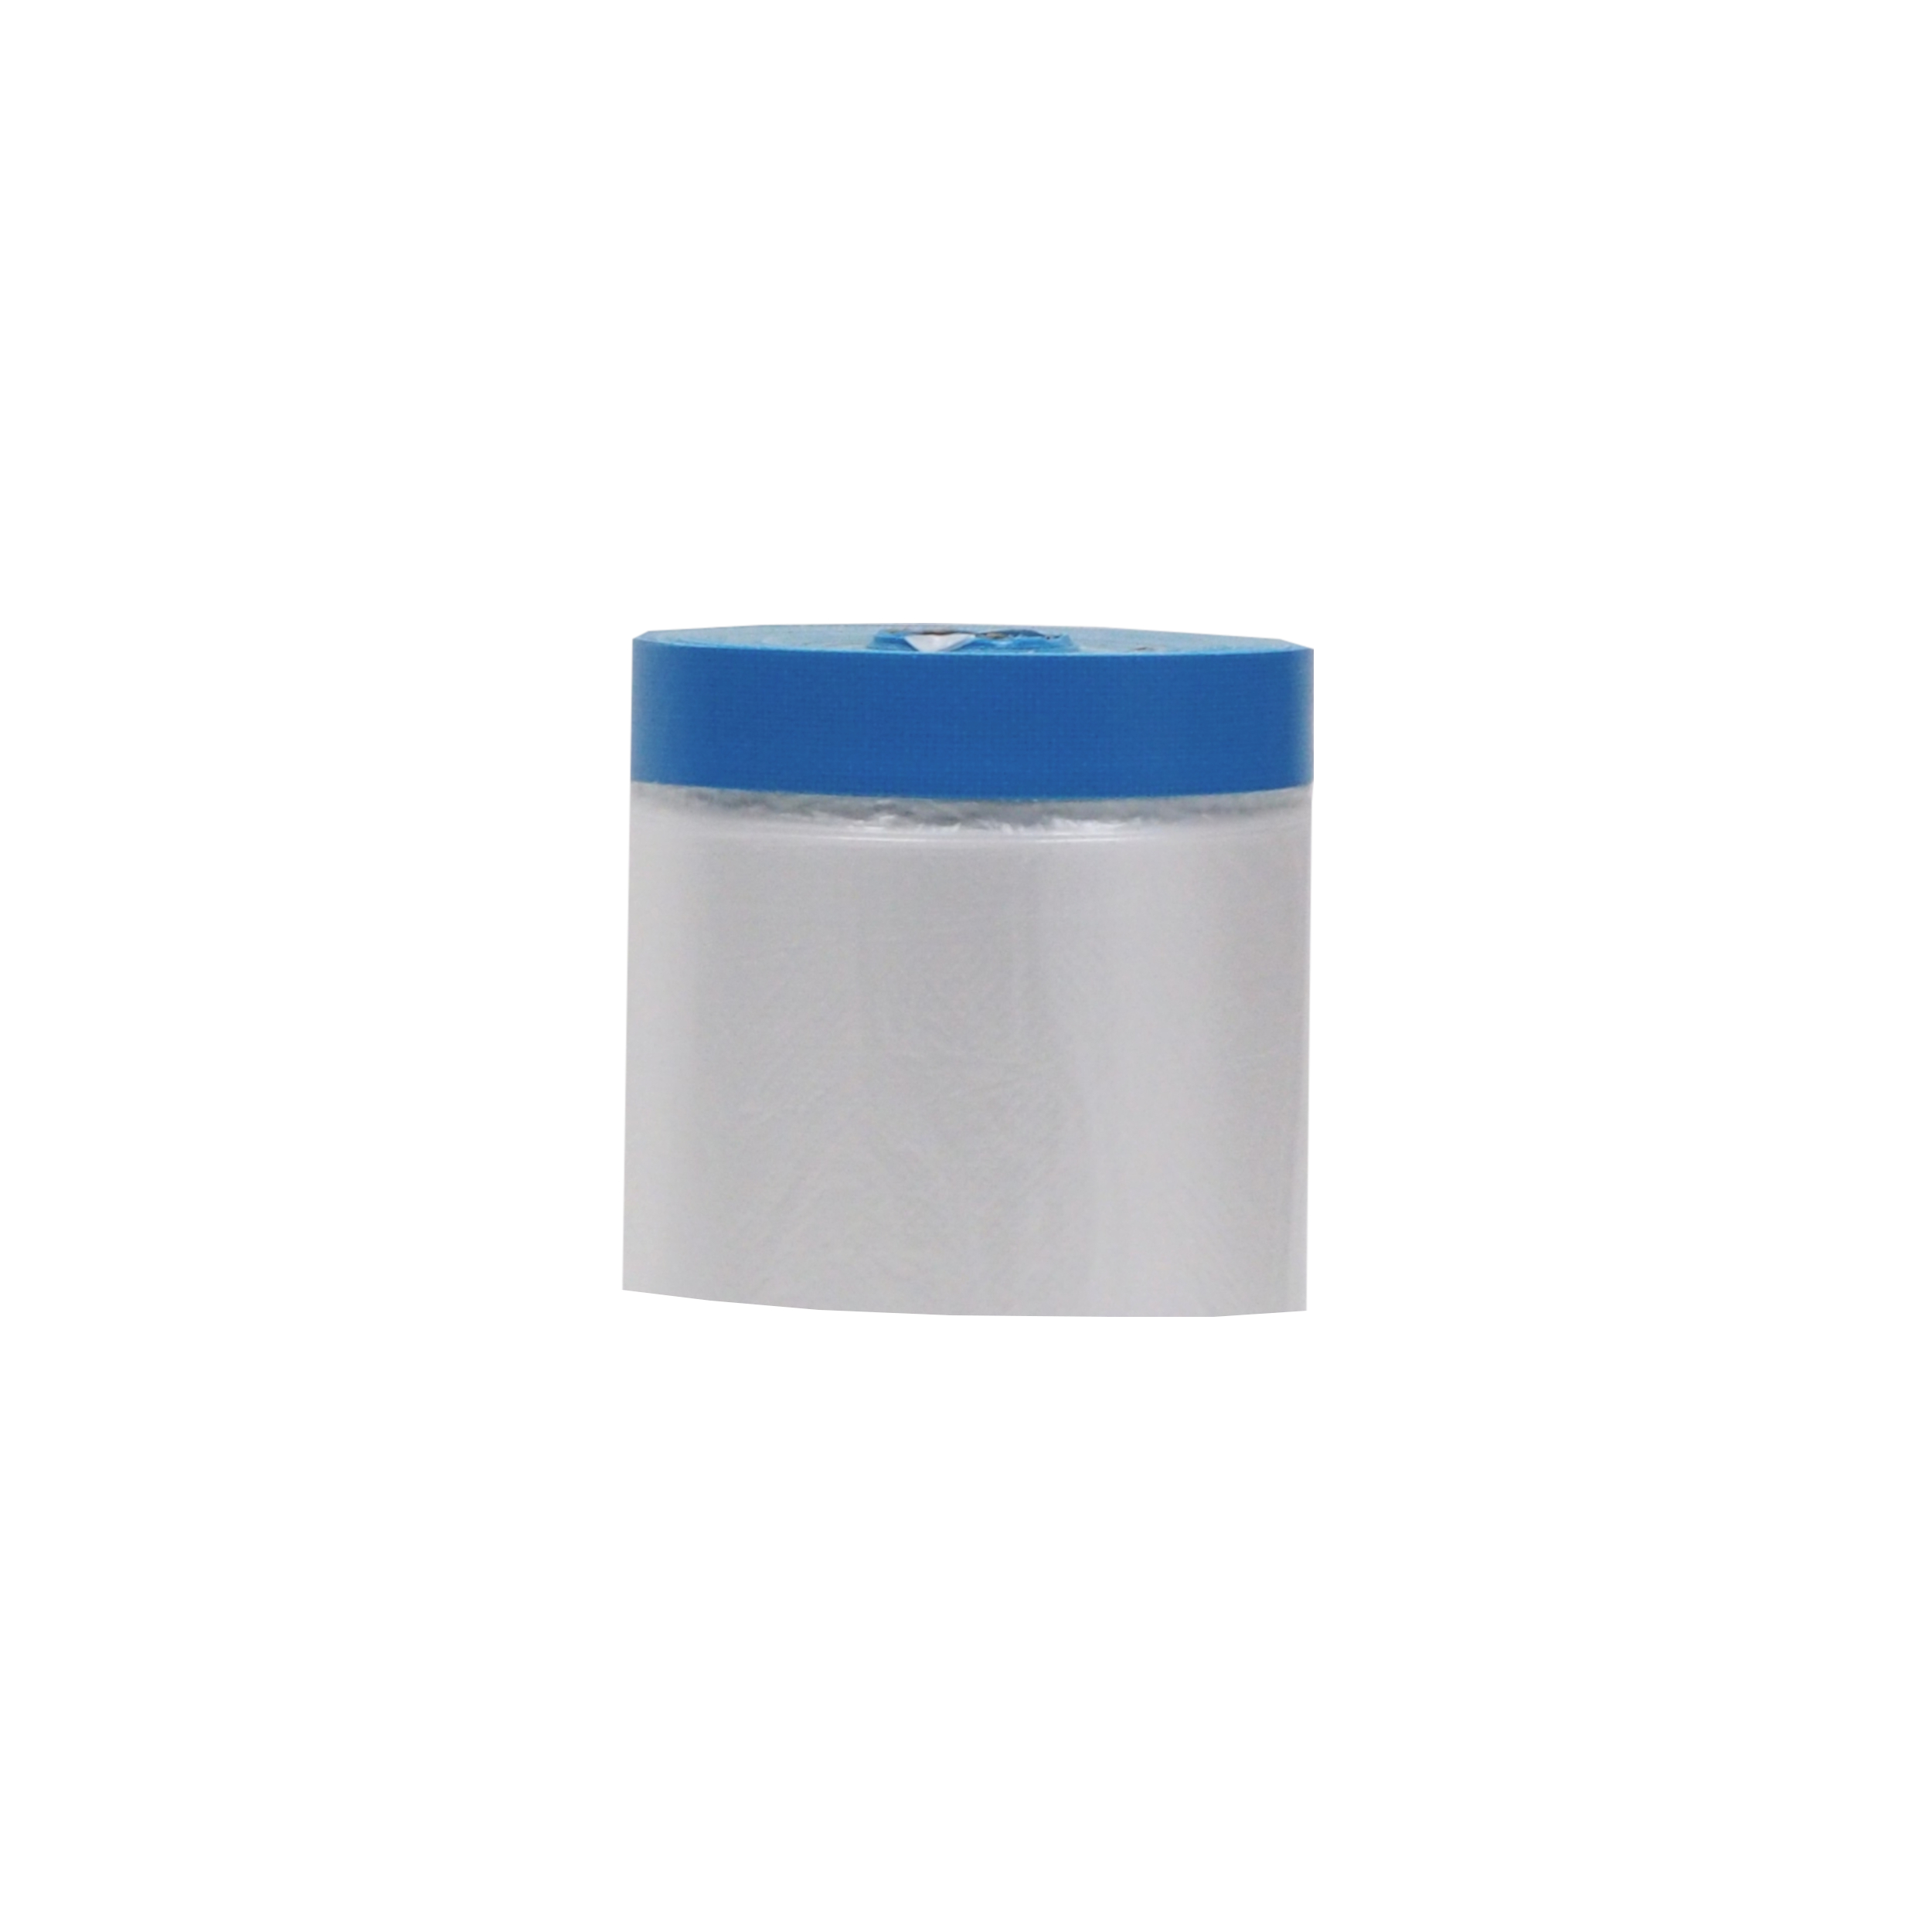 páska lepicí Targa blue mask, se zakrývací fólií, 55 cm x 20 m 0.19 Kg TOP Sklad4 701413 12